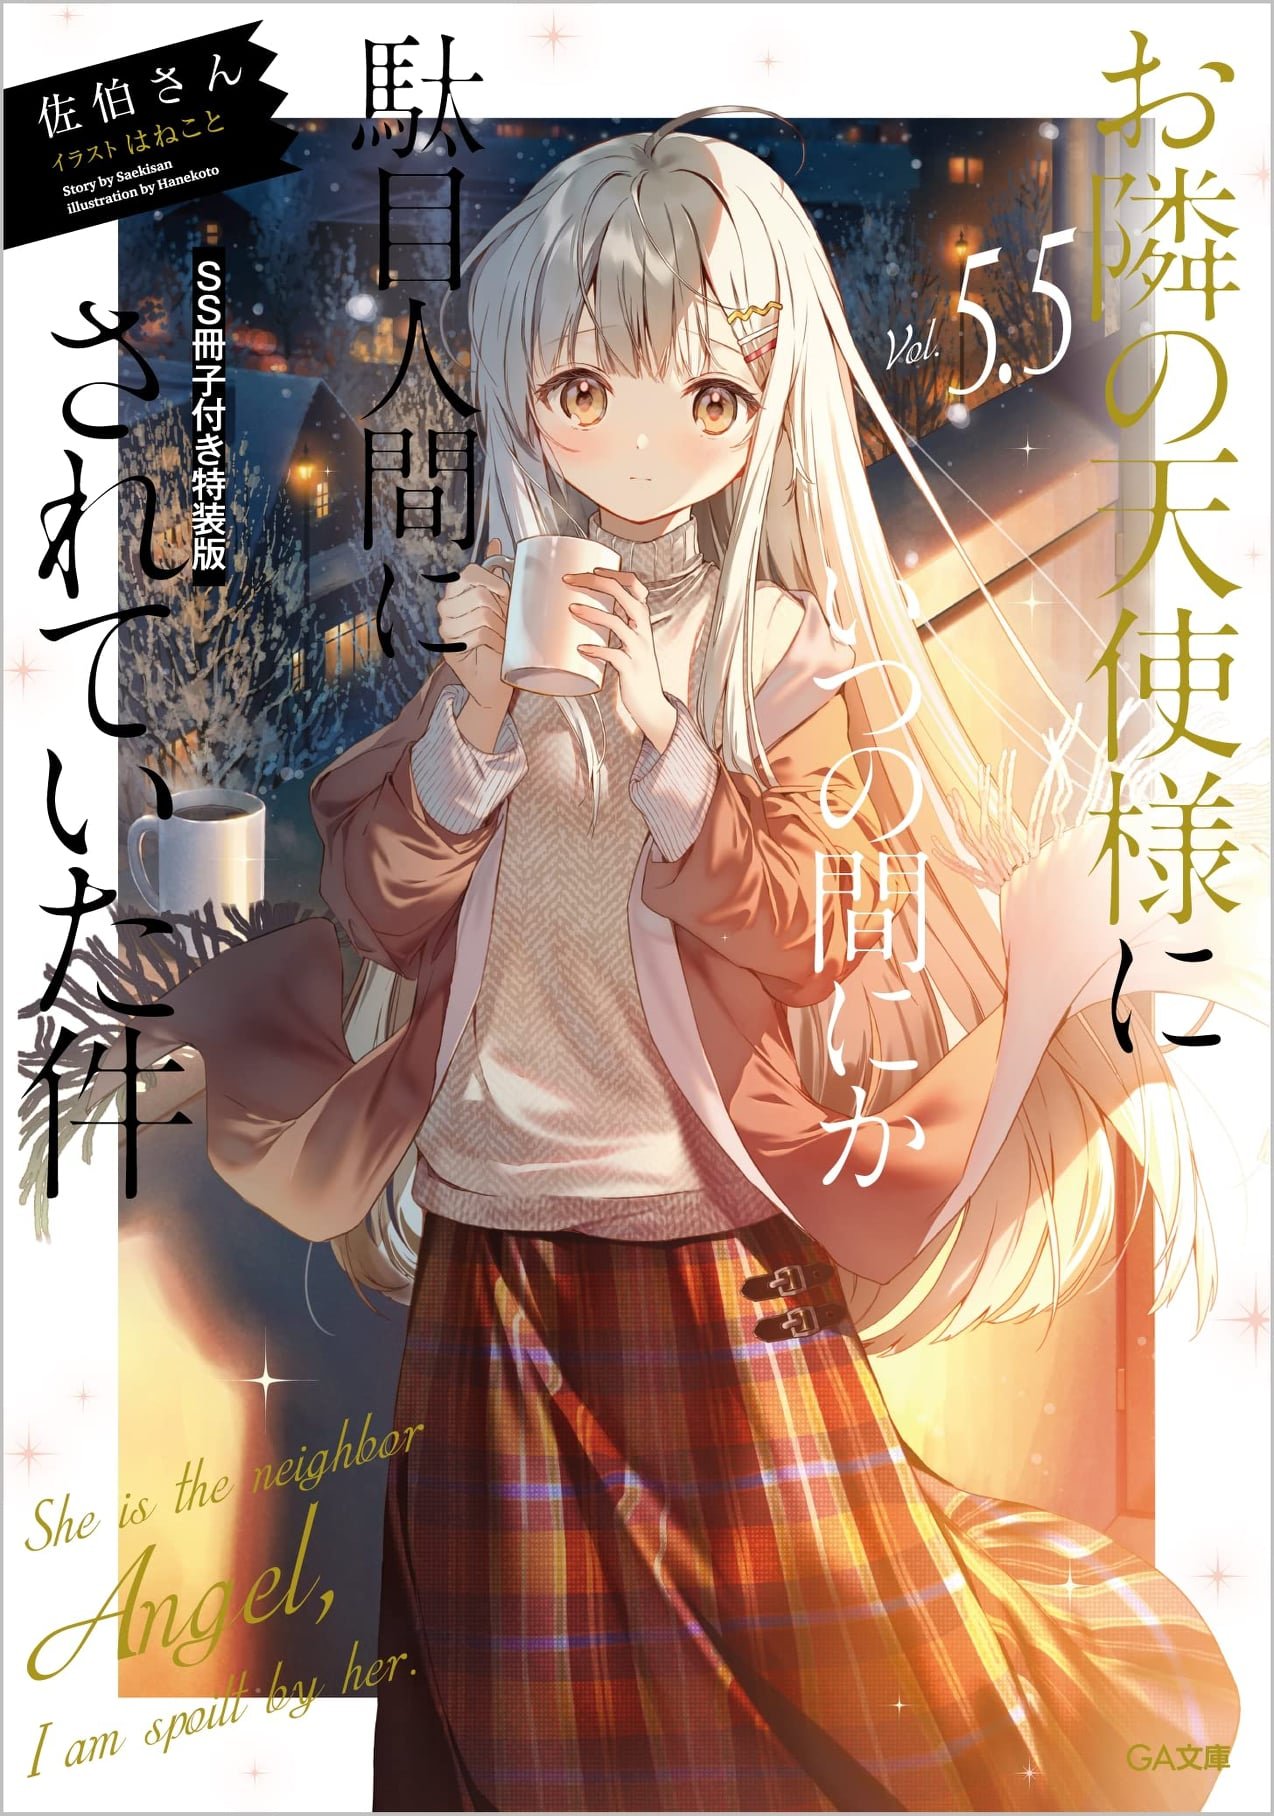 Mangá Satsuriku no Tenshi termina no 12º volume